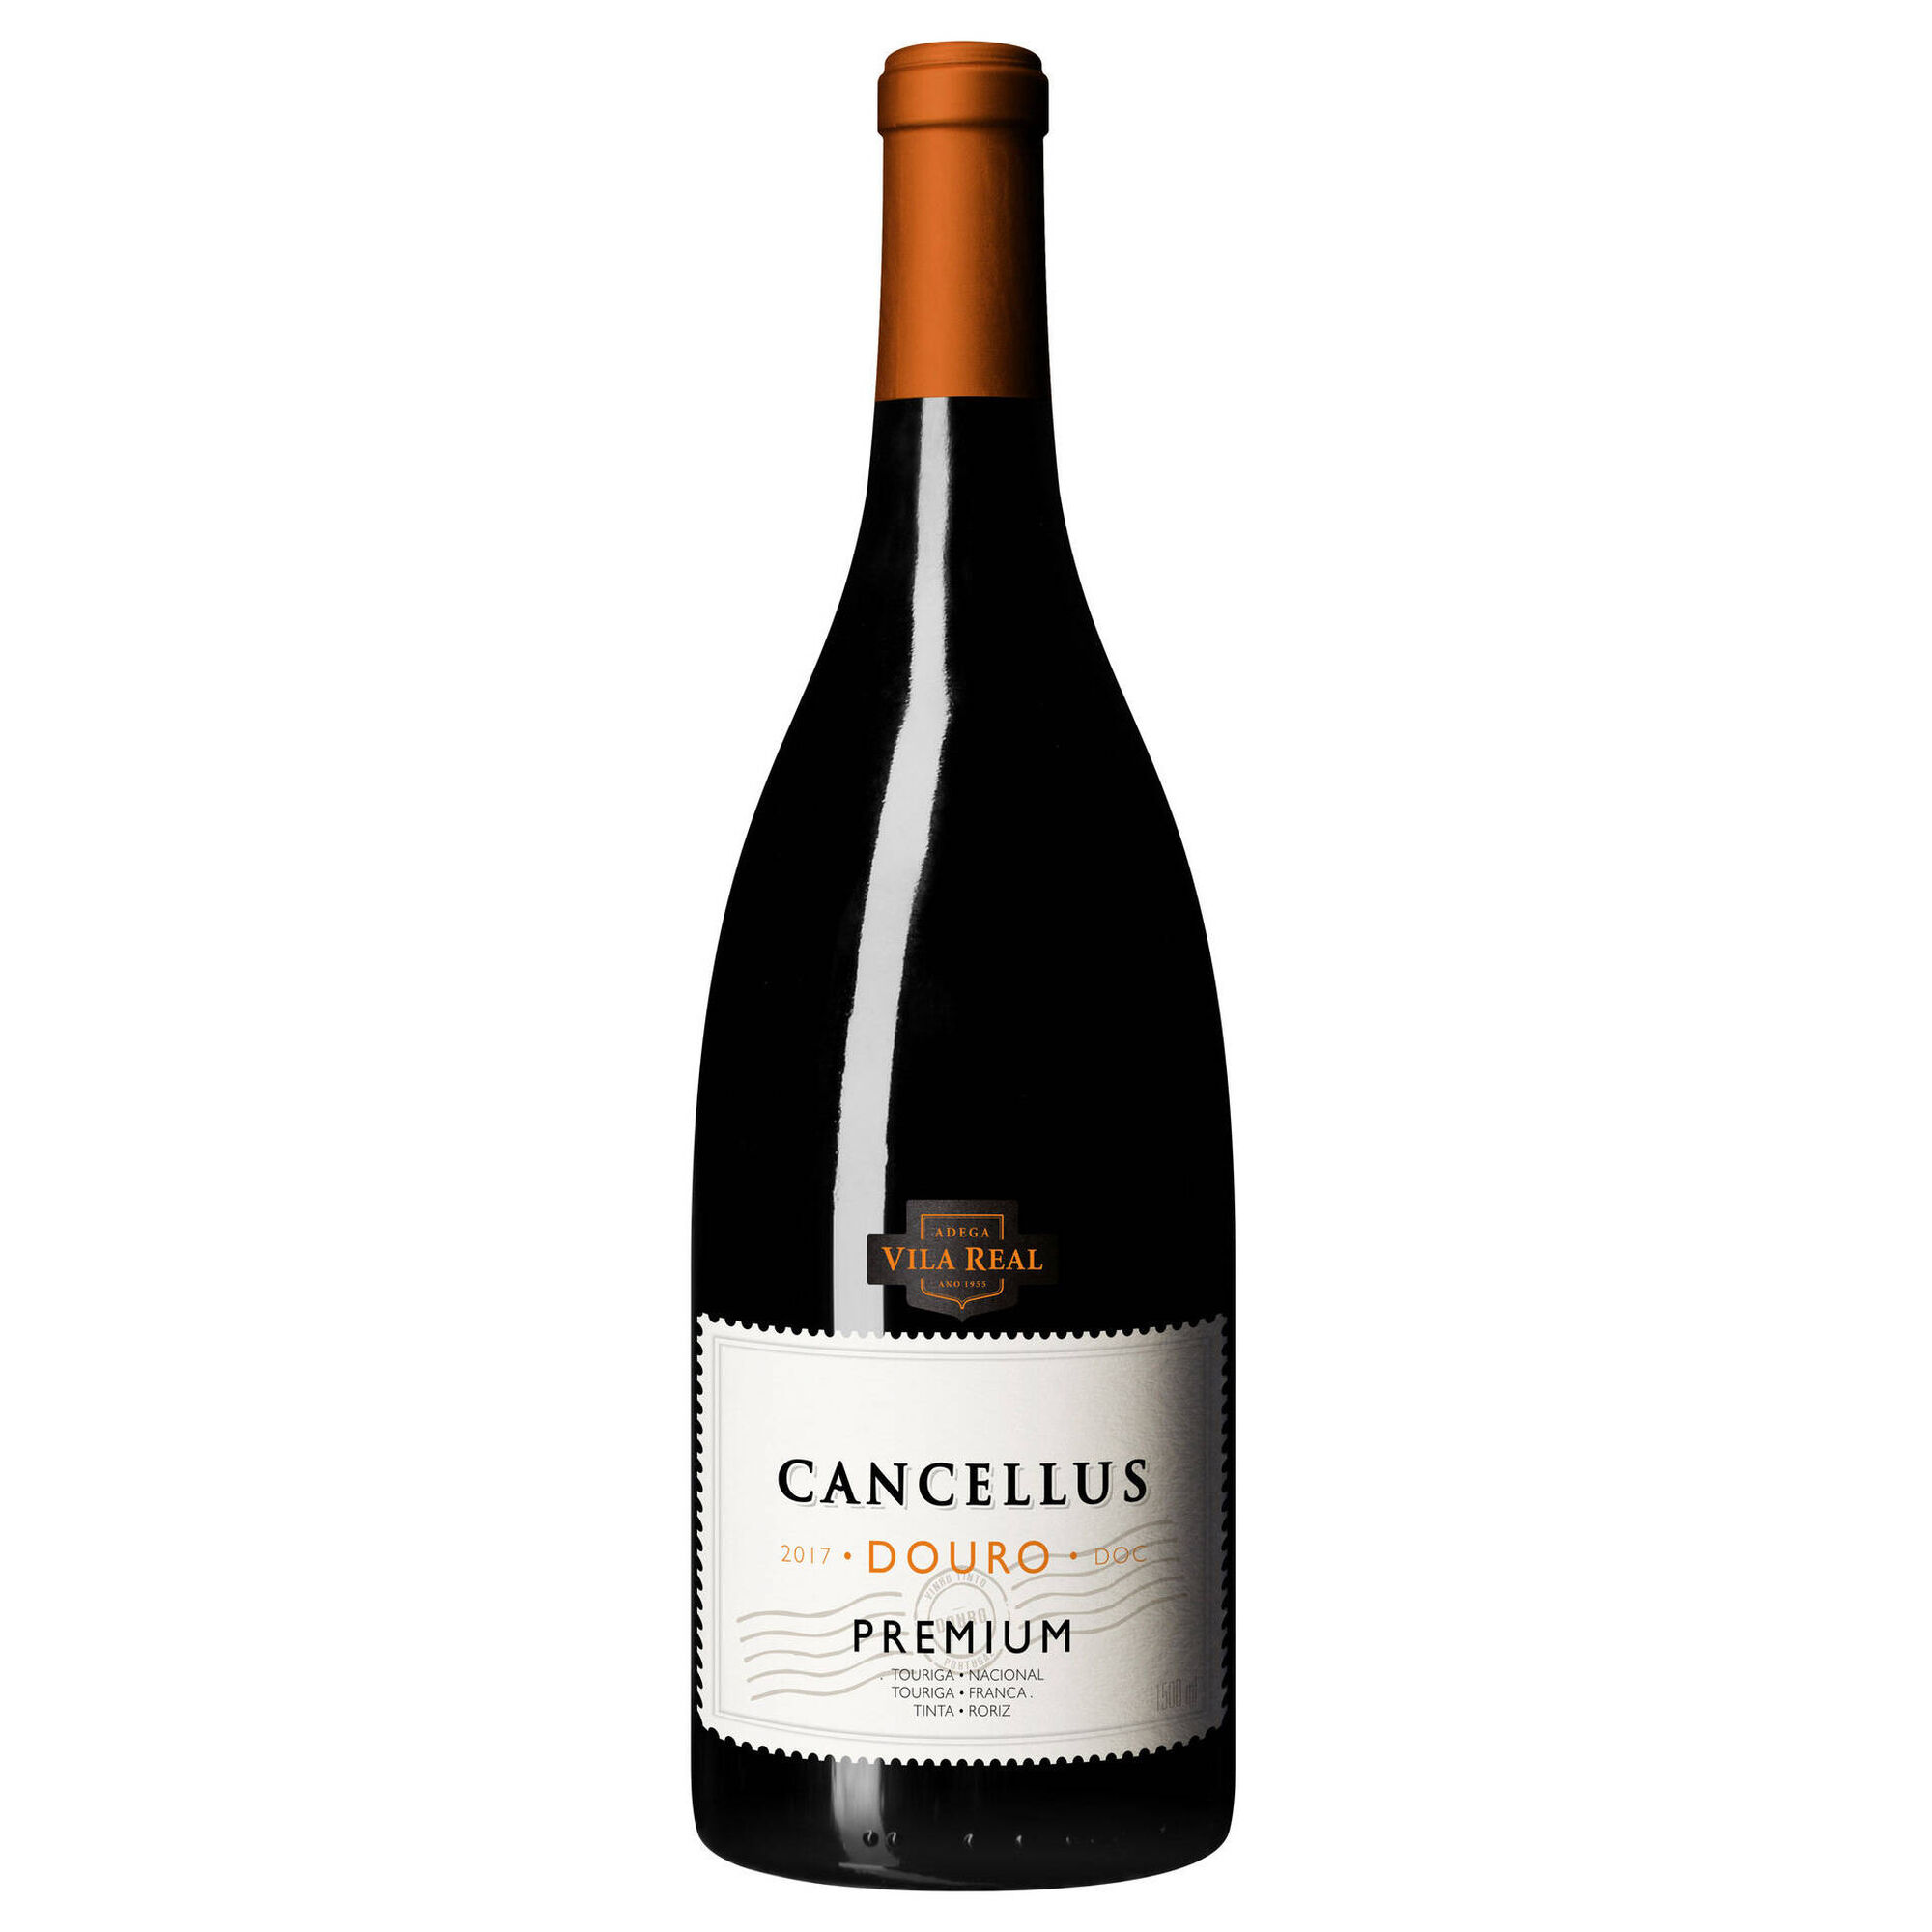 Cancellus Premium Regional Douro Vinho Tinto